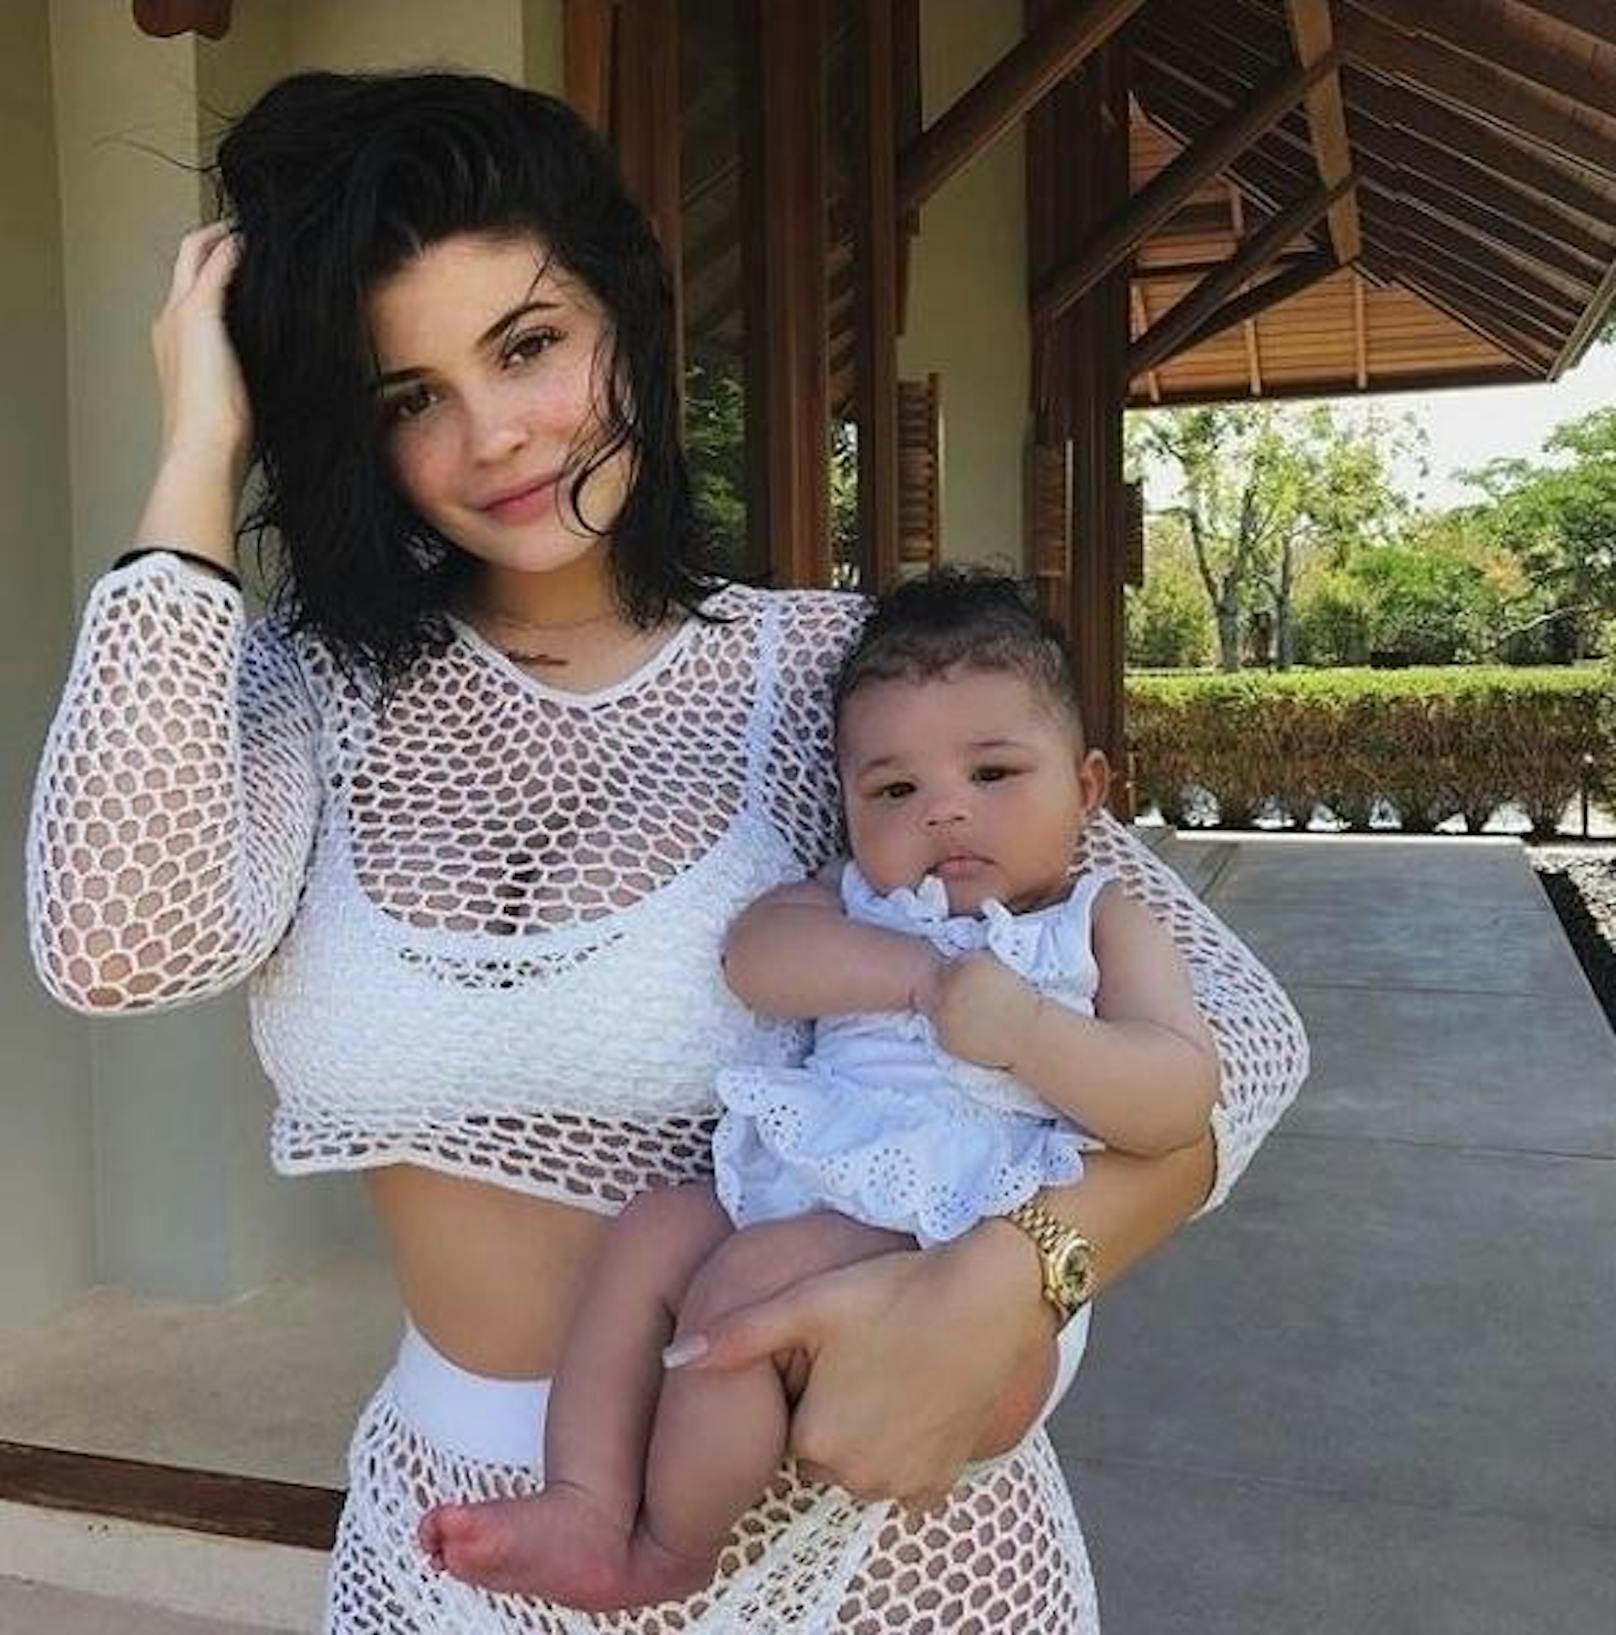 03.05.2018: Kylie Jenner zeigt sich mit Tochter Stormi am Arm. Das Bild, auf dem die 20-Jährige neben ihrem Baby ein weißes Fishnet-Outfit trägt, brachte es innerhalb weniger Stunden auf beachtliche 11,2 Millionen Likes.